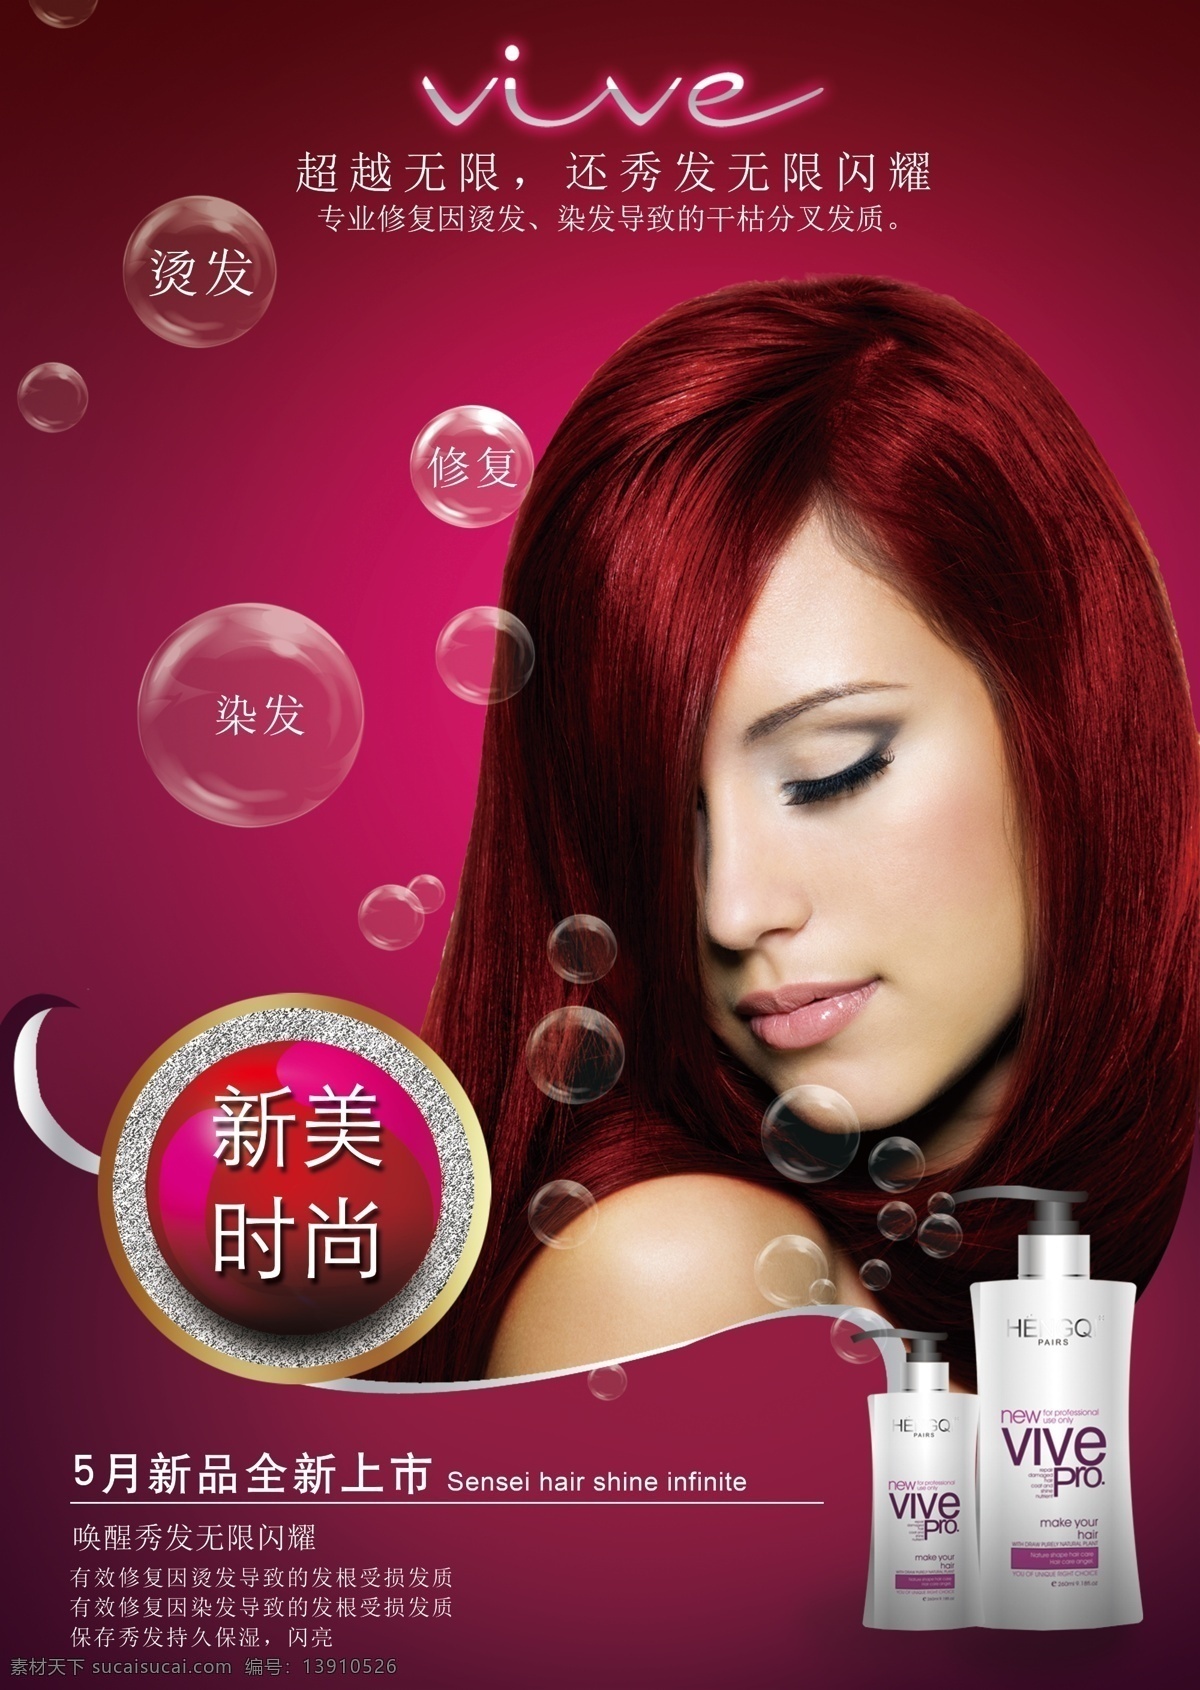 美发广告海报 美发产品 广告素材 红头发 美发 洗发水 psd素材 红色炫彩背景 气泡 光染效果 美容 美发素材